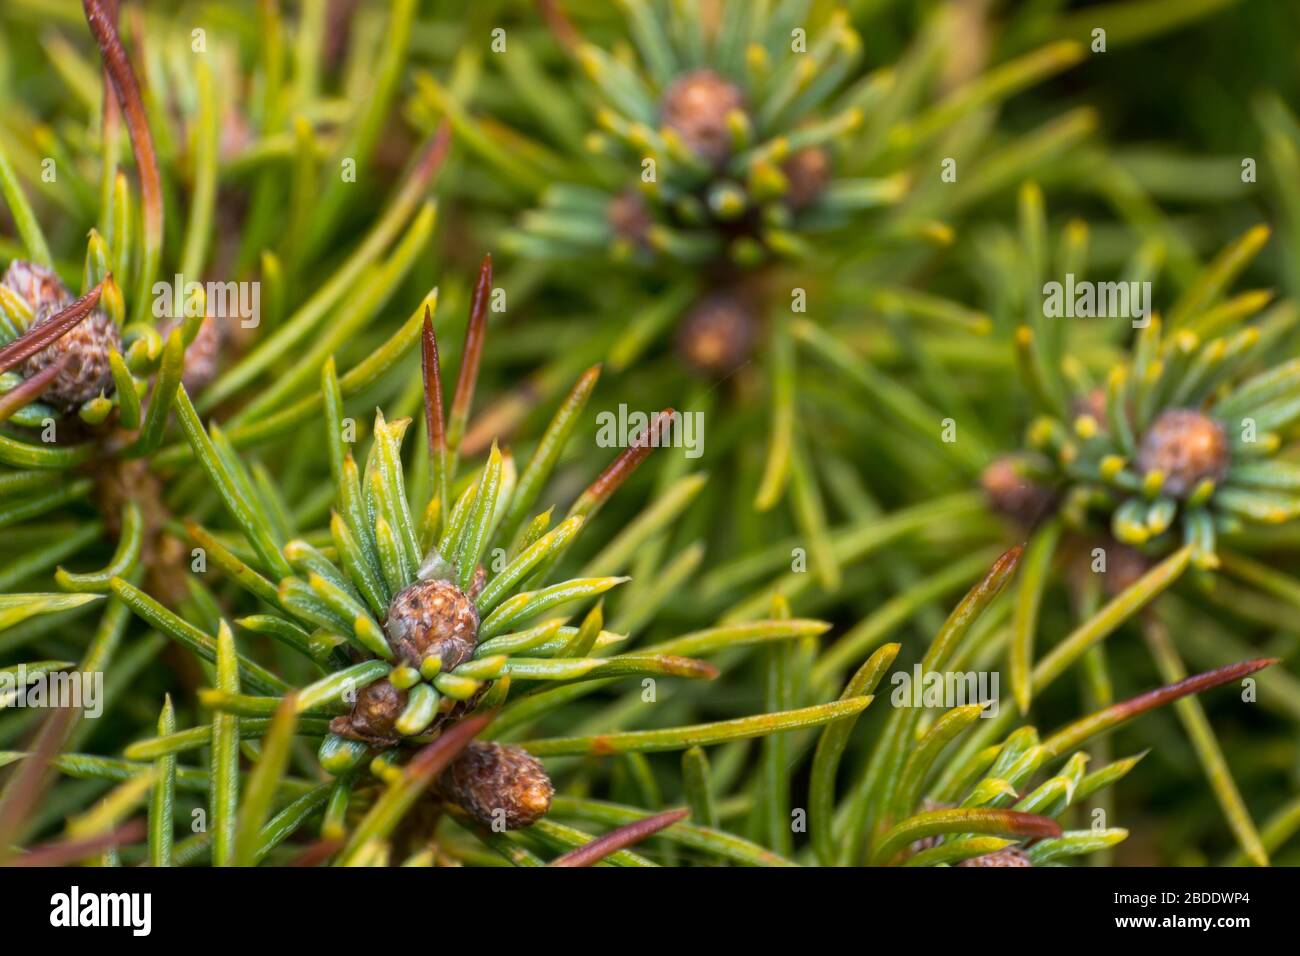 gros plan photo d'un pin en saison de printemps Banque D'Images